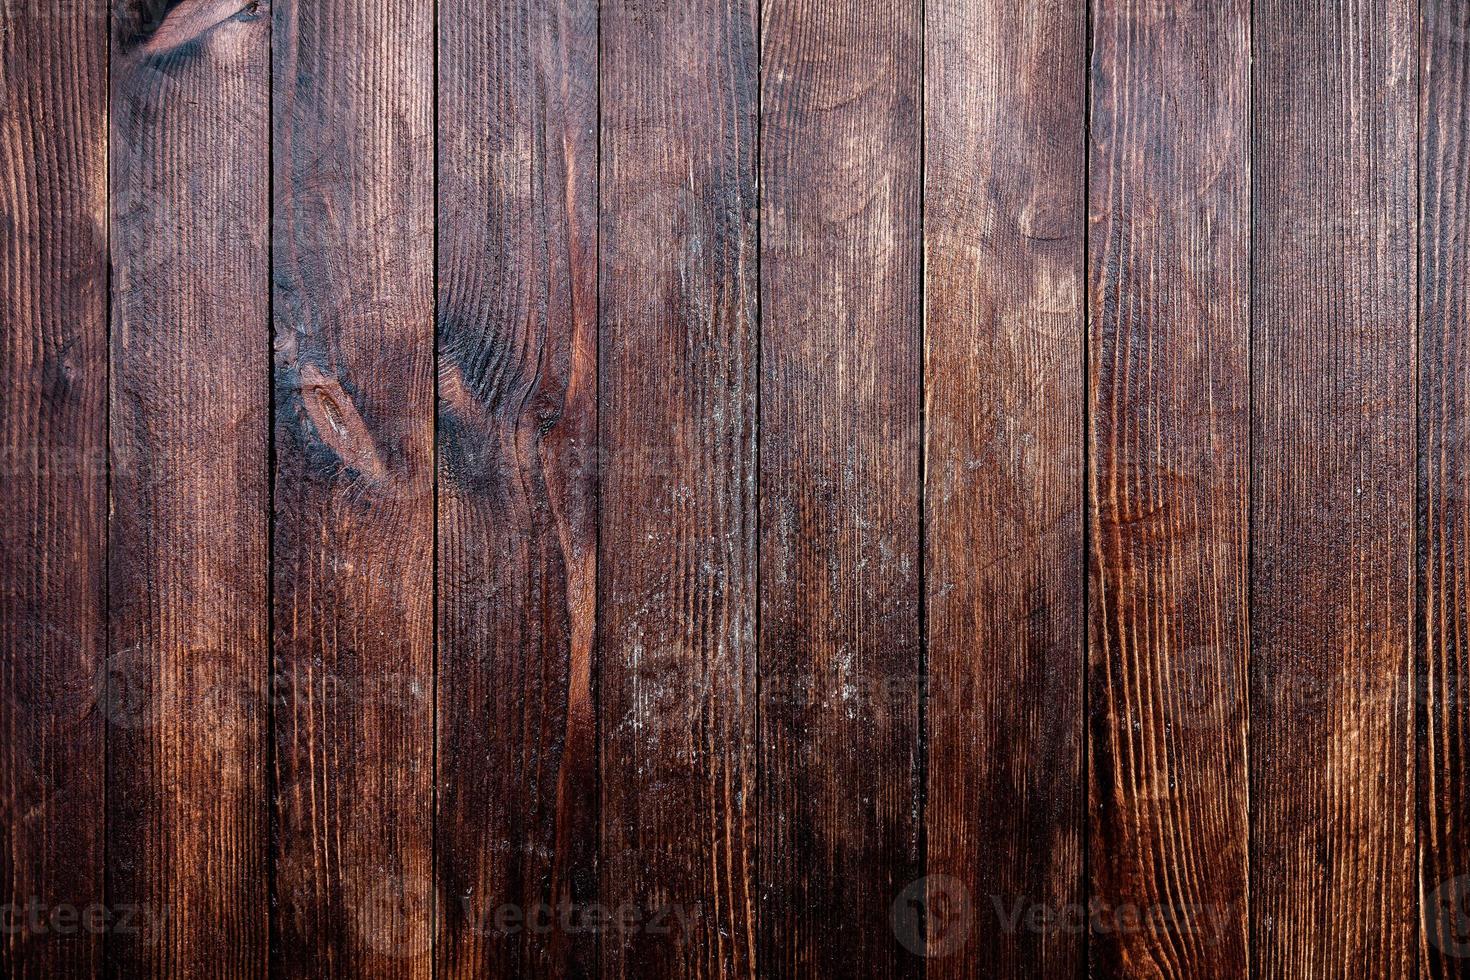 texture di sfondo in legno marrone vintage con nodi e fori per unghie. vecchio muro di legno dipinto. sfondo astratto marrone. tavole orizzontali scure in legno vintage. vista frontale con spazio di copia foto